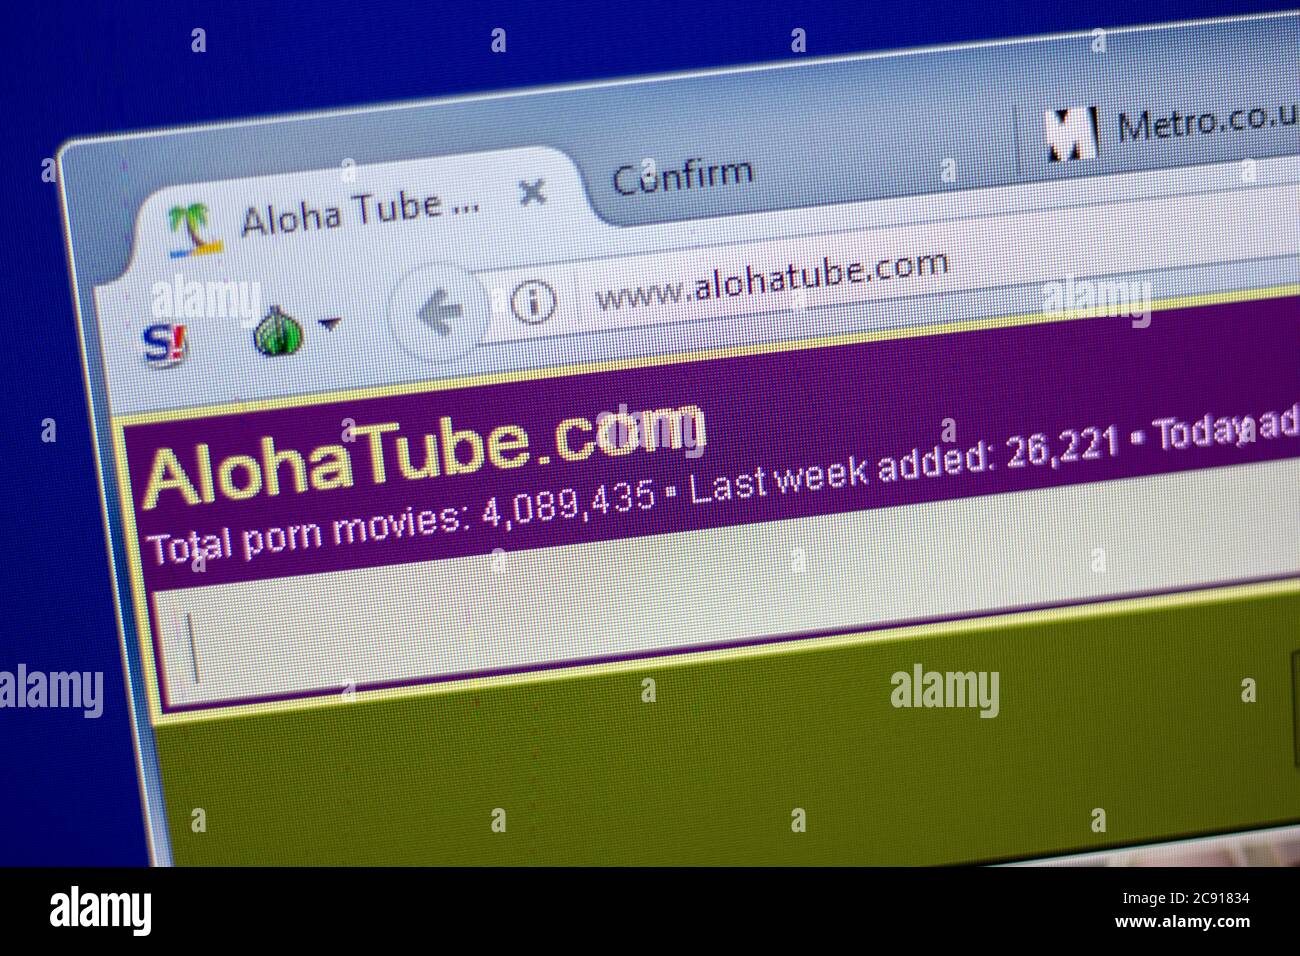 Aloha tube hd